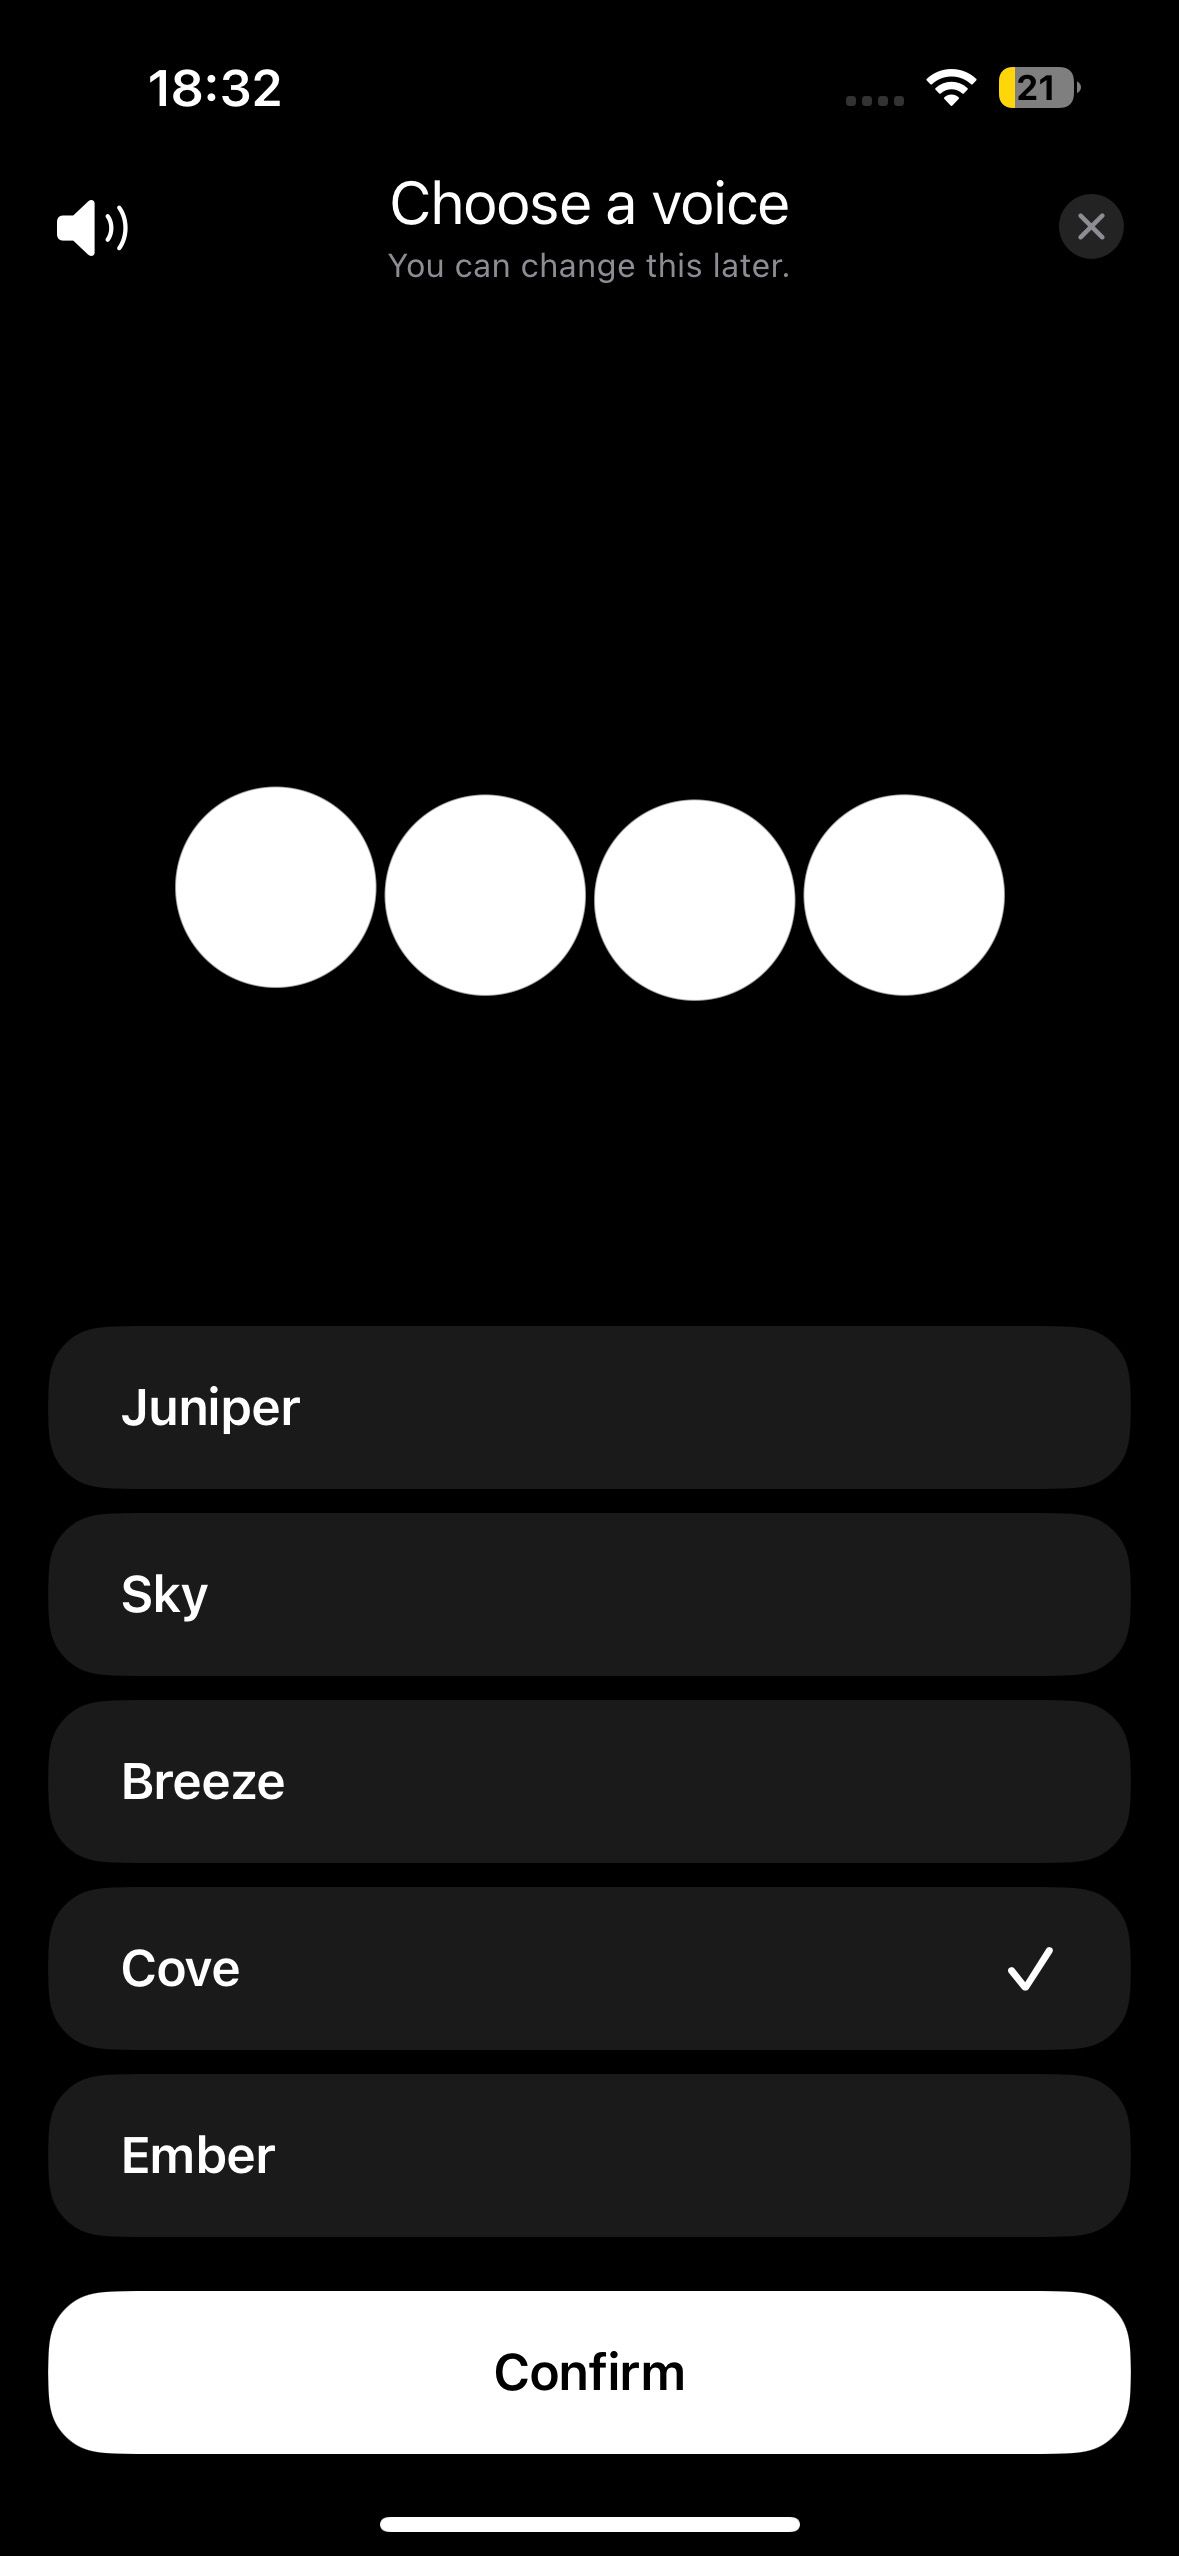 Uma tela de seleção de voz no aplicativo ChatGPT, mostrando diferentes opções de voz como Juniper, Sky, Breeze, Cove e Ember, com a opção Cove selecionada.